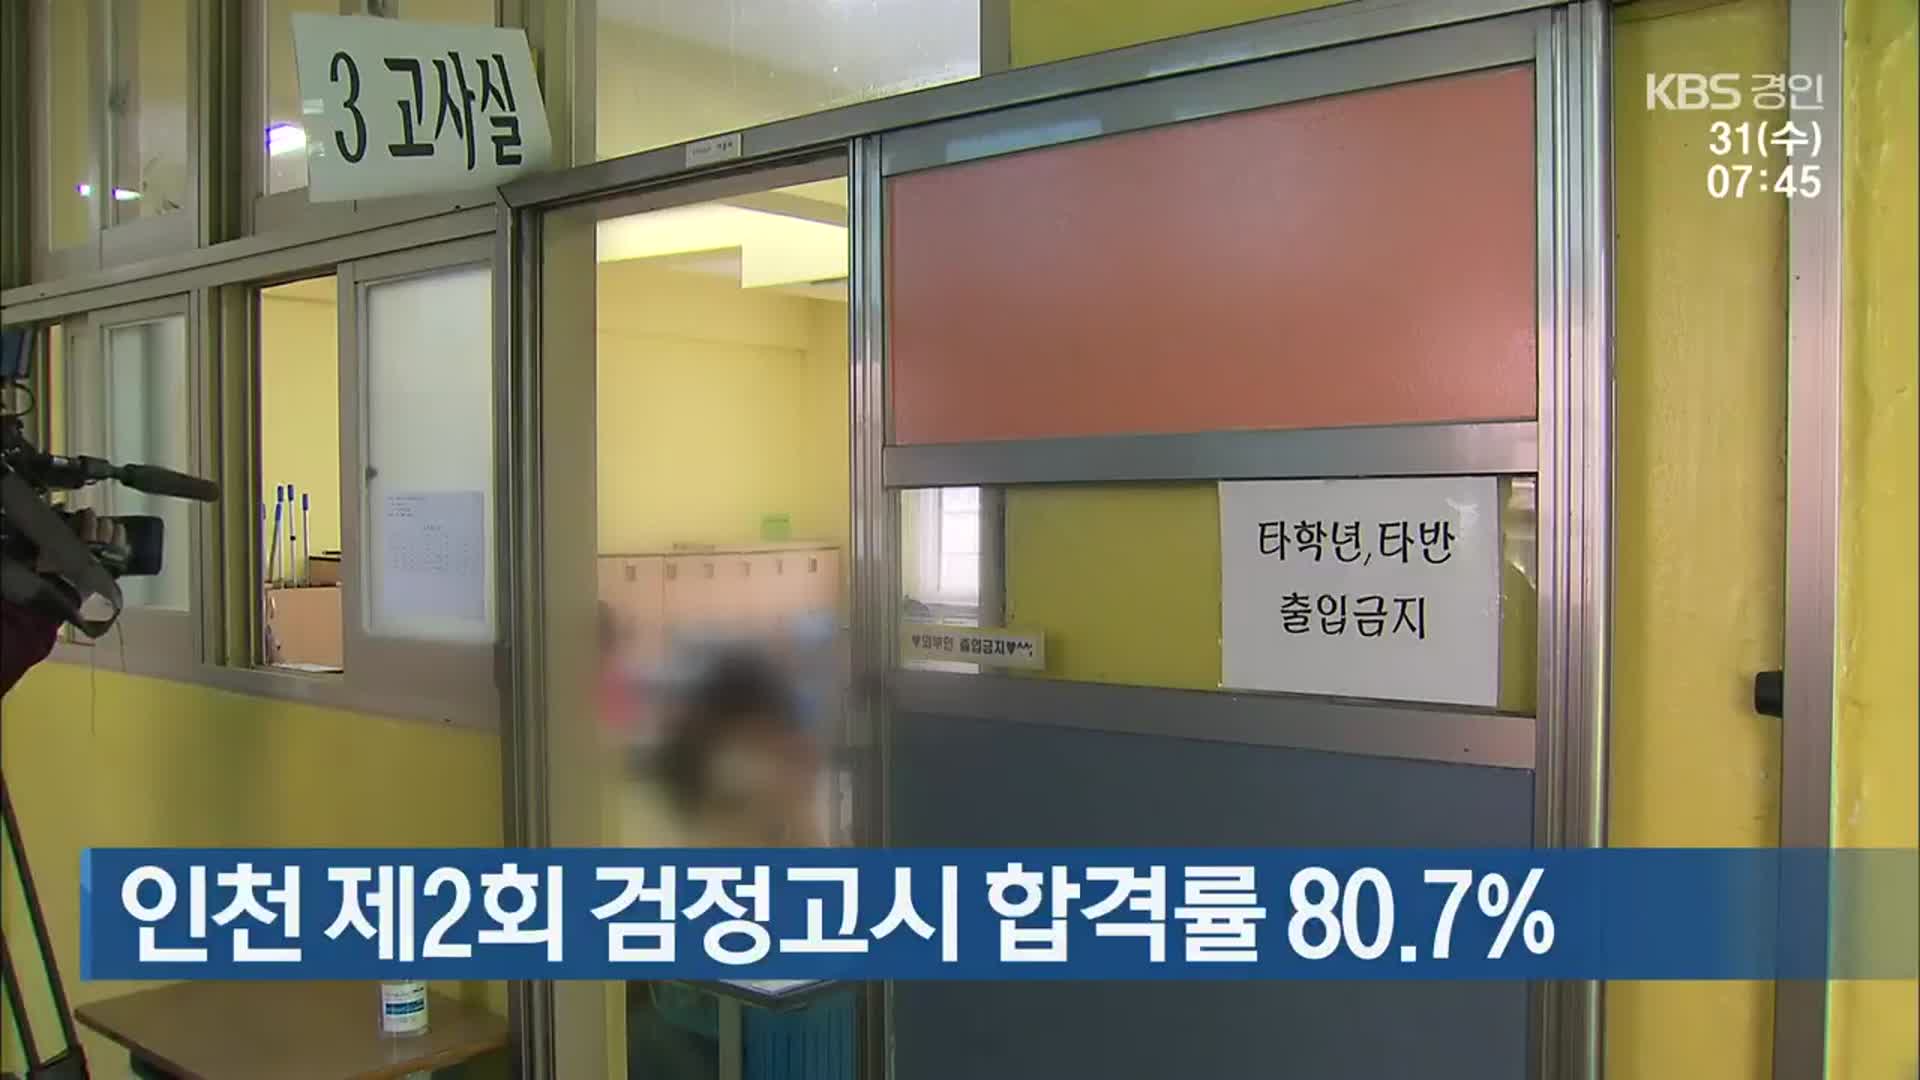 인천 제2회 검정고시 합격률 80.7%